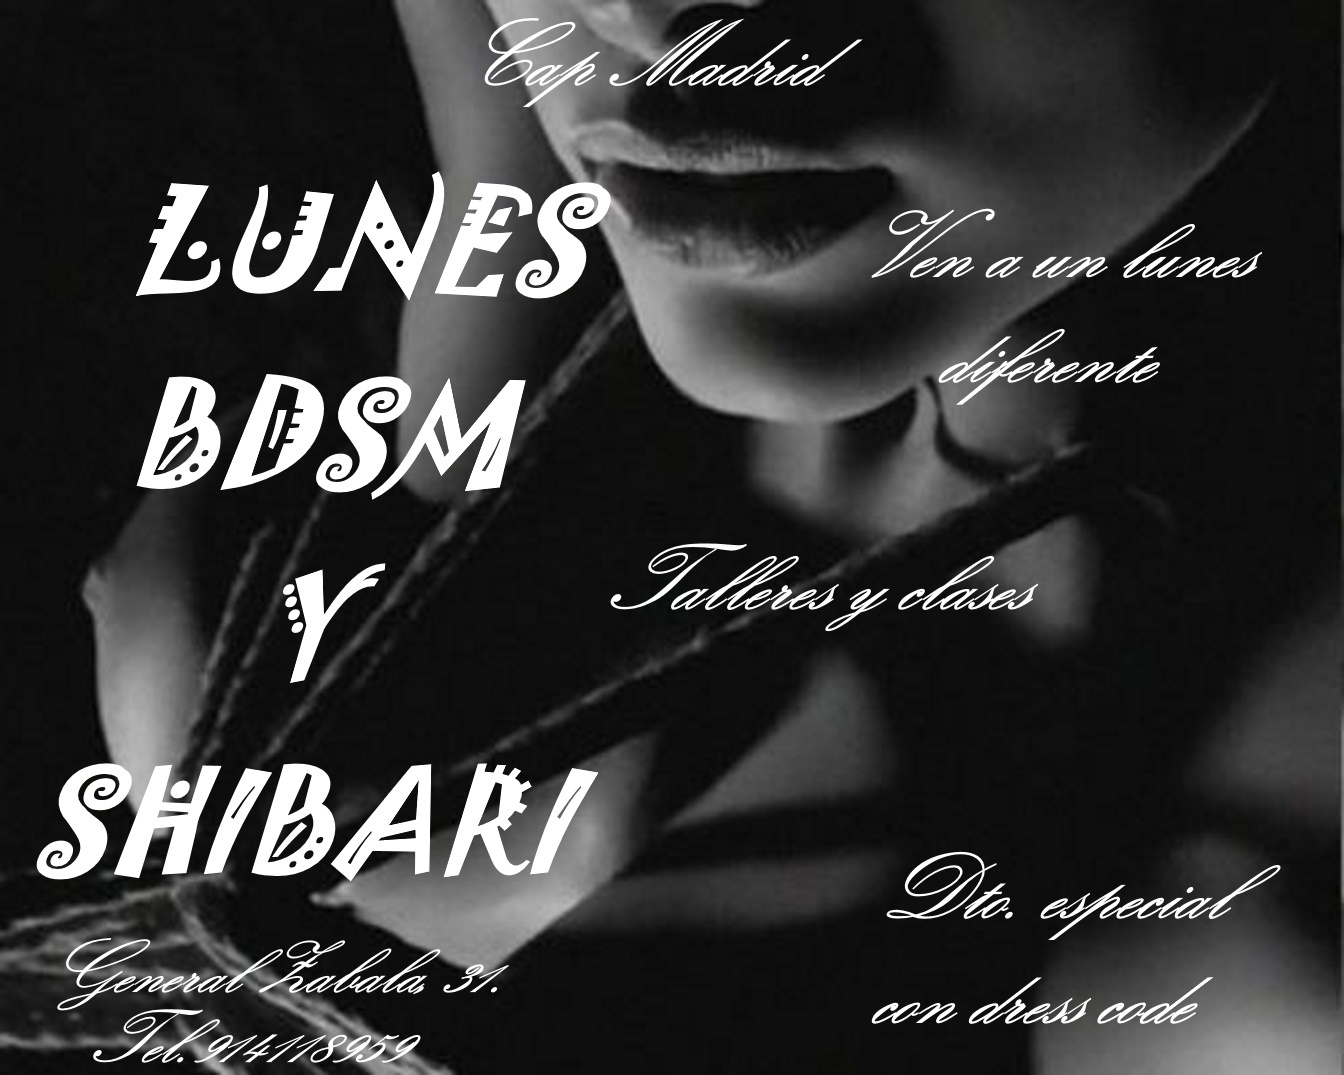 LUNES DE BDSM Y SHIBARI EN CAP VALENCIA